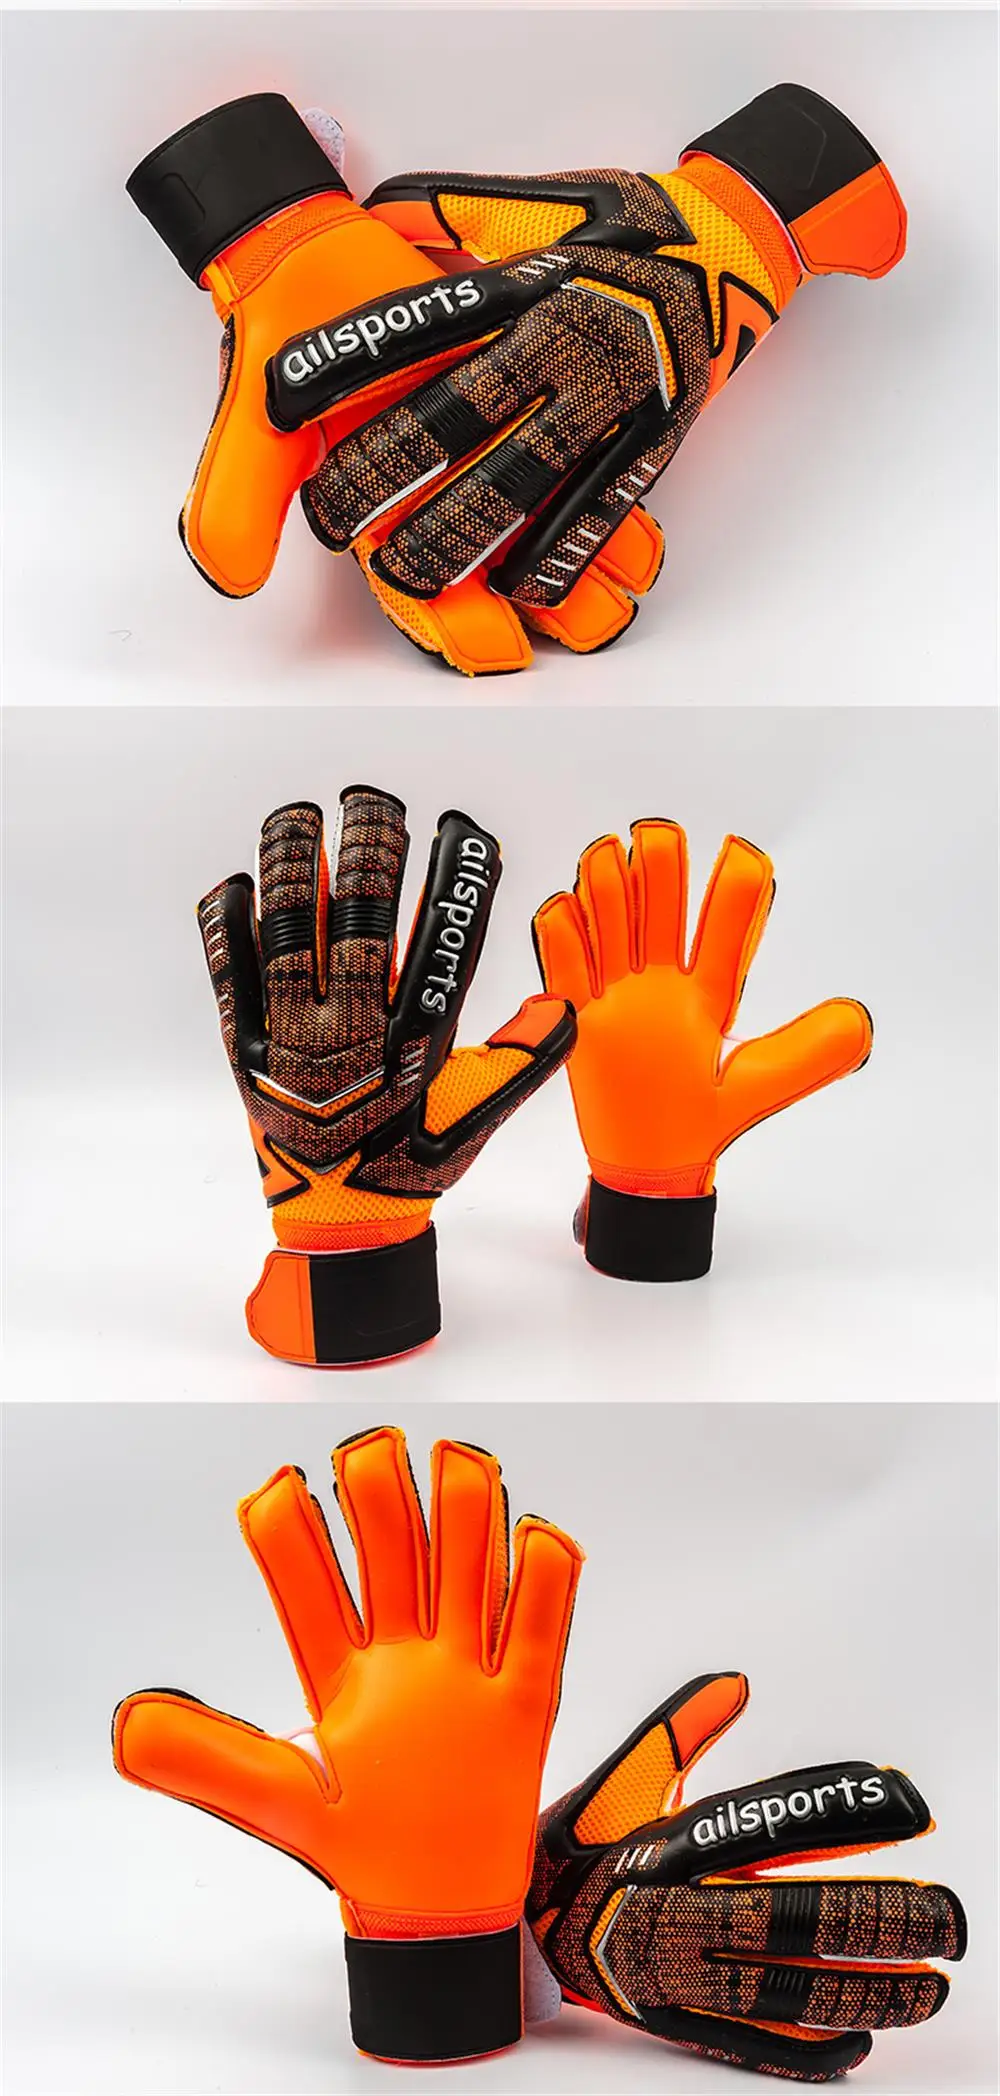 Новые профессиональные Вратарские Утепленные перчатки из латекса для защиты пальцев для детей и взрослых Размер от 5 до 11 luva de goleiro futbol перчатки